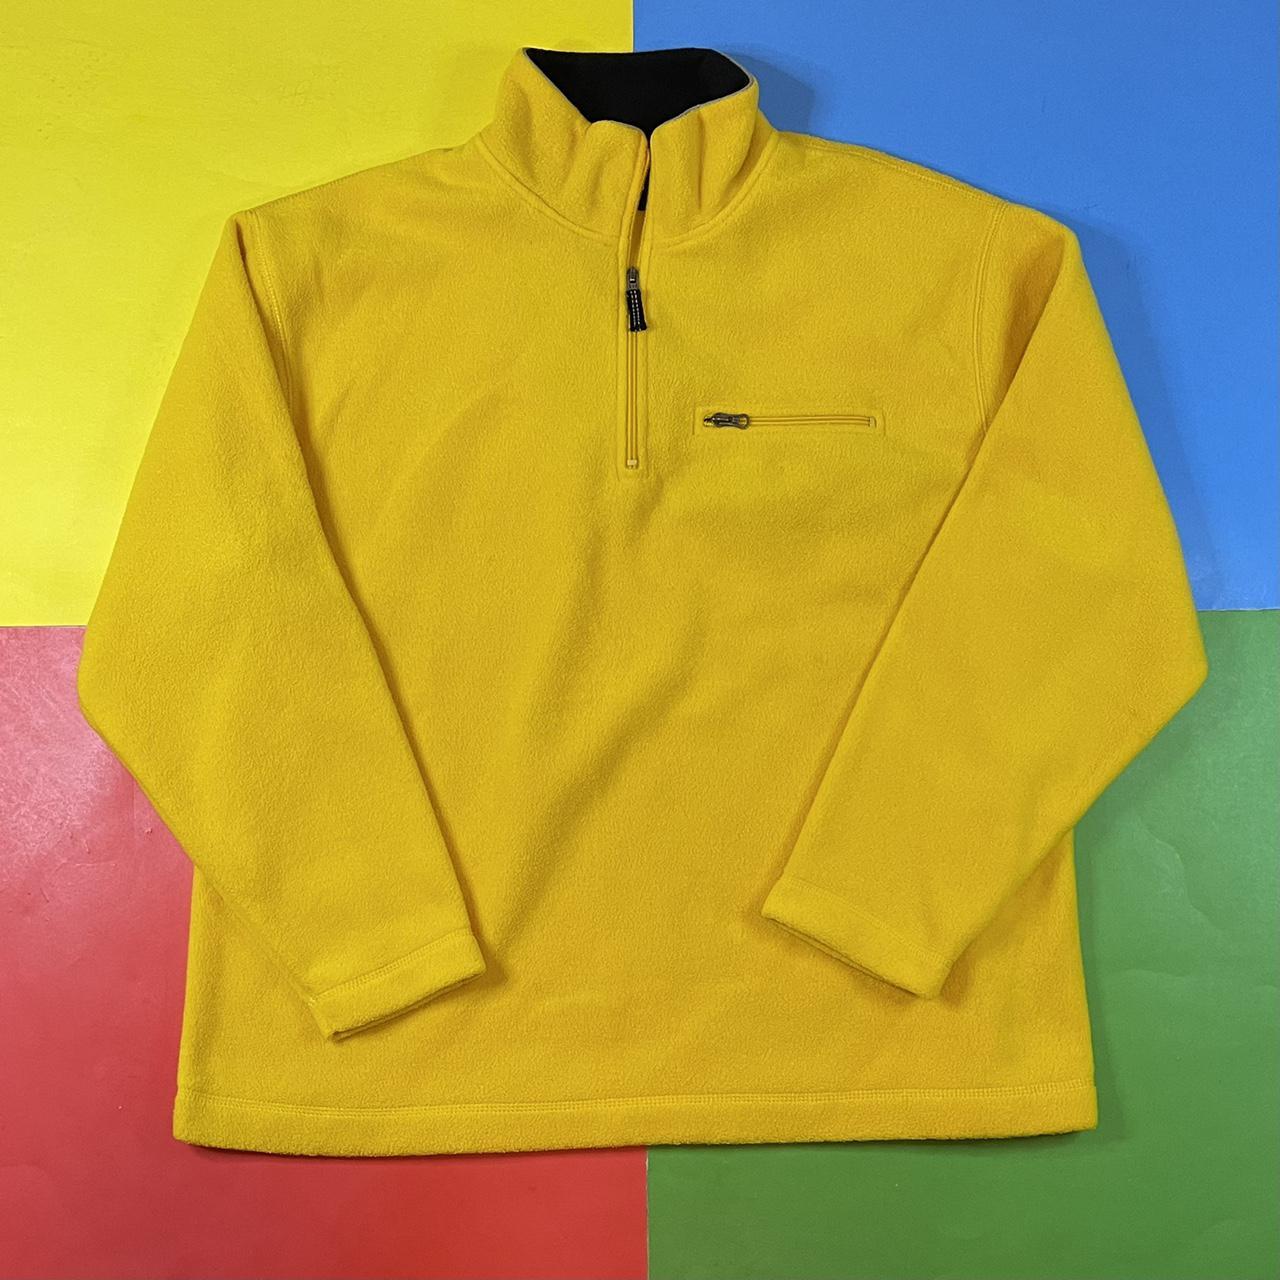 Vintage Gap fleece. 1/4 zip yellow fleece pullover... - Depop